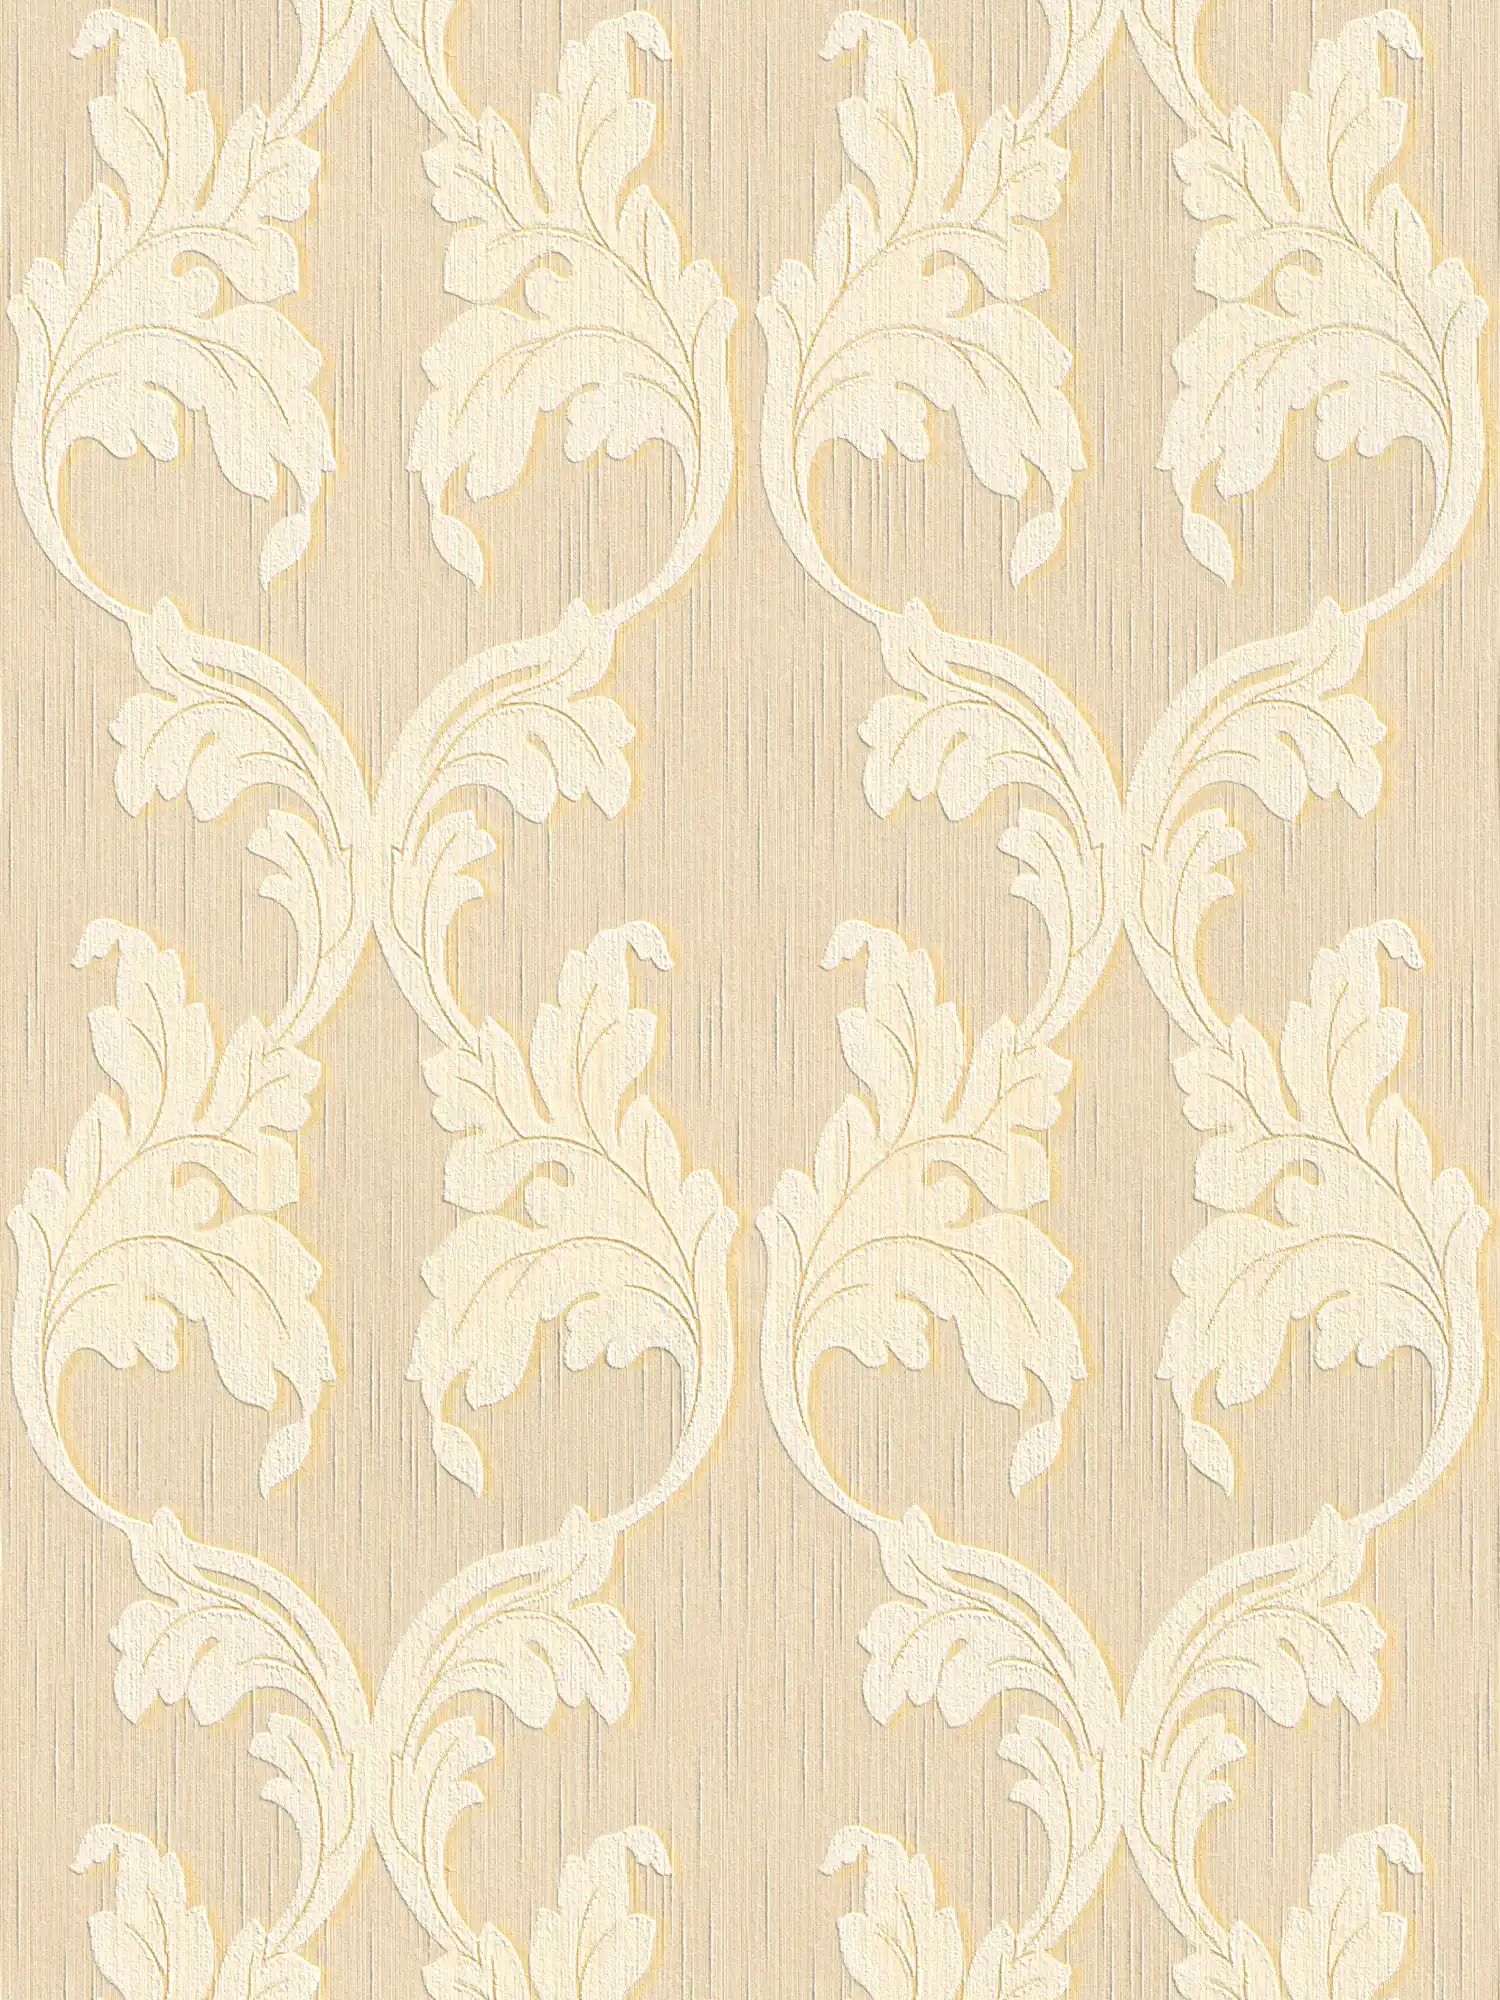 papier peint en papier textile avec rinceaux baroques - beige, jaune
